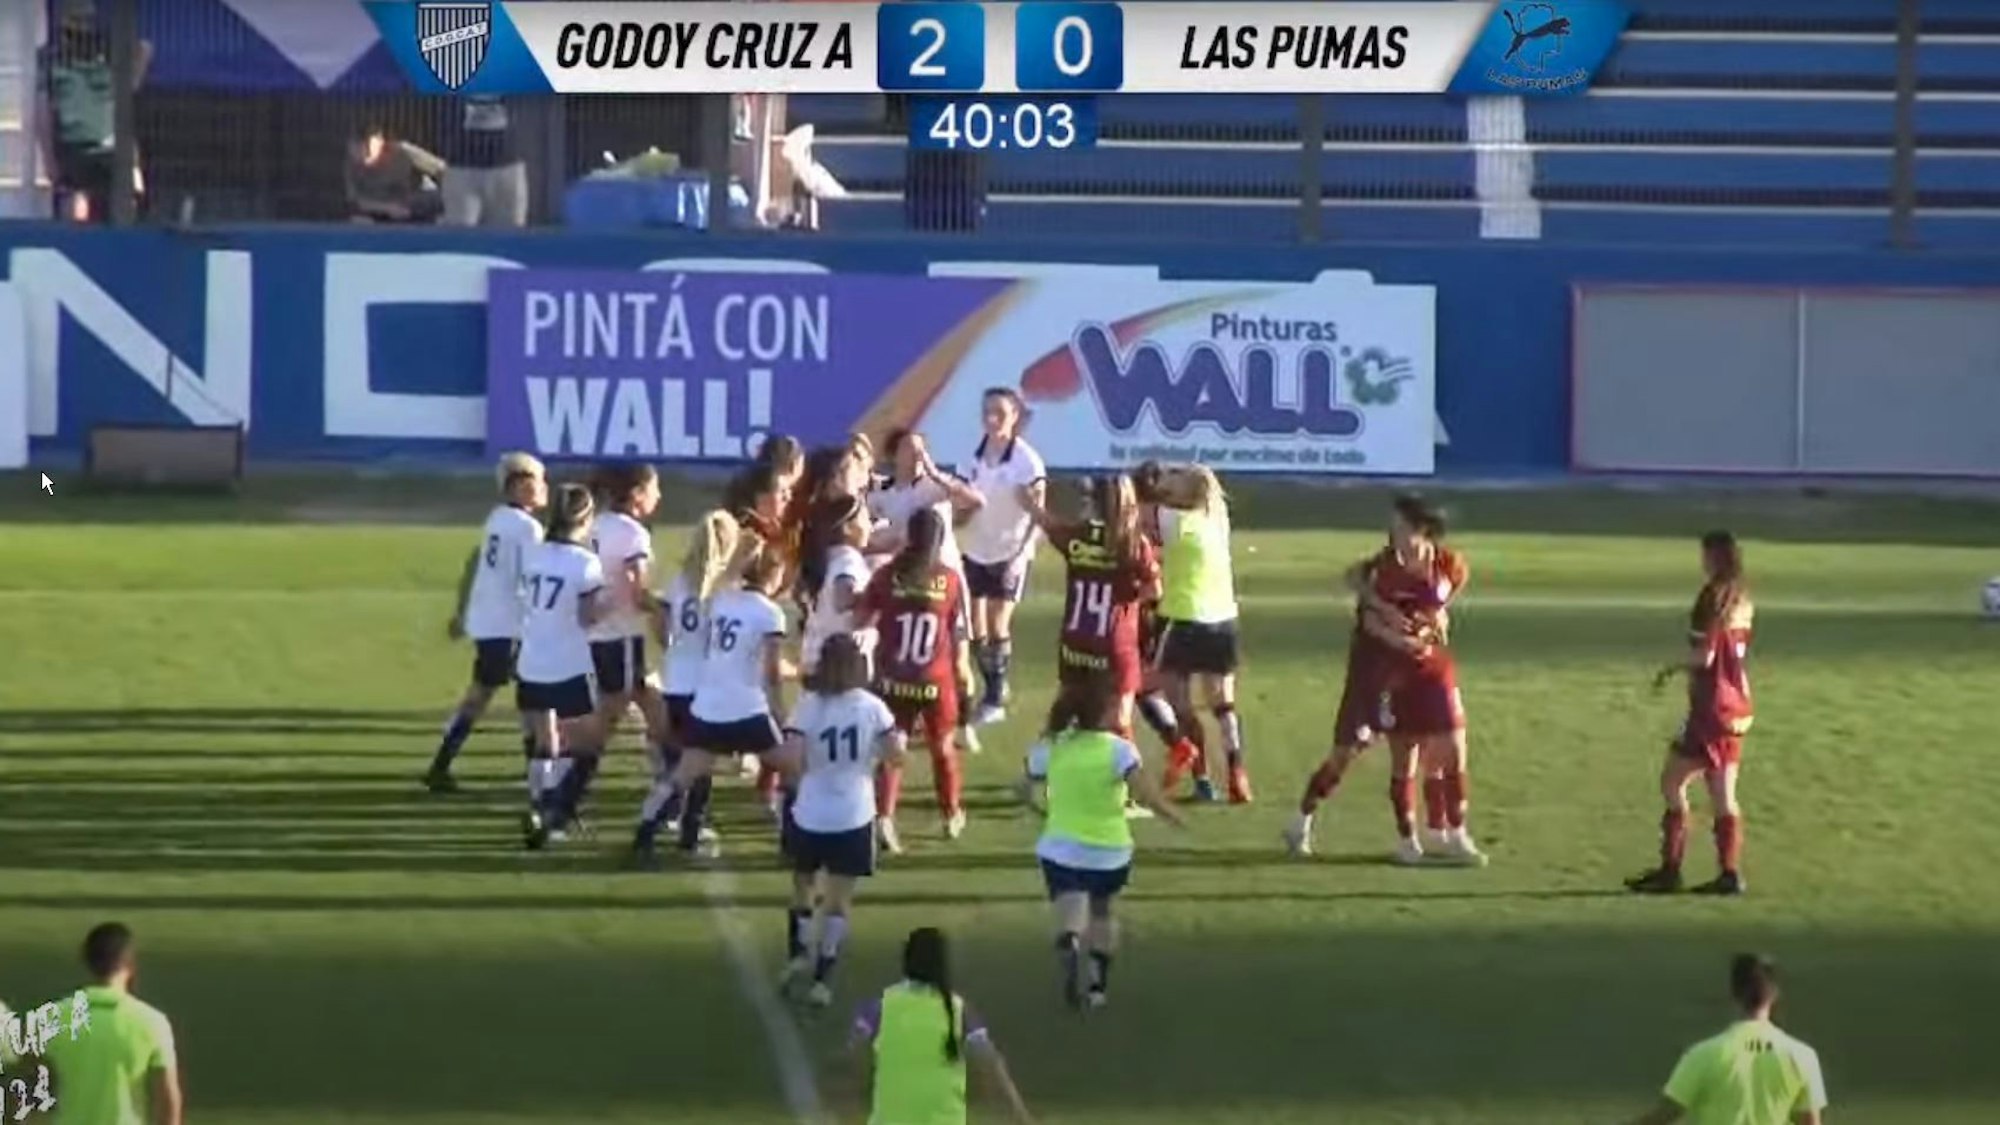 Im Frauen-Fußballspiel zwischen Godoy Cruz und Las Pumas in Argentinien liefern sich die Spielerinnen eine wilde Prügelei.